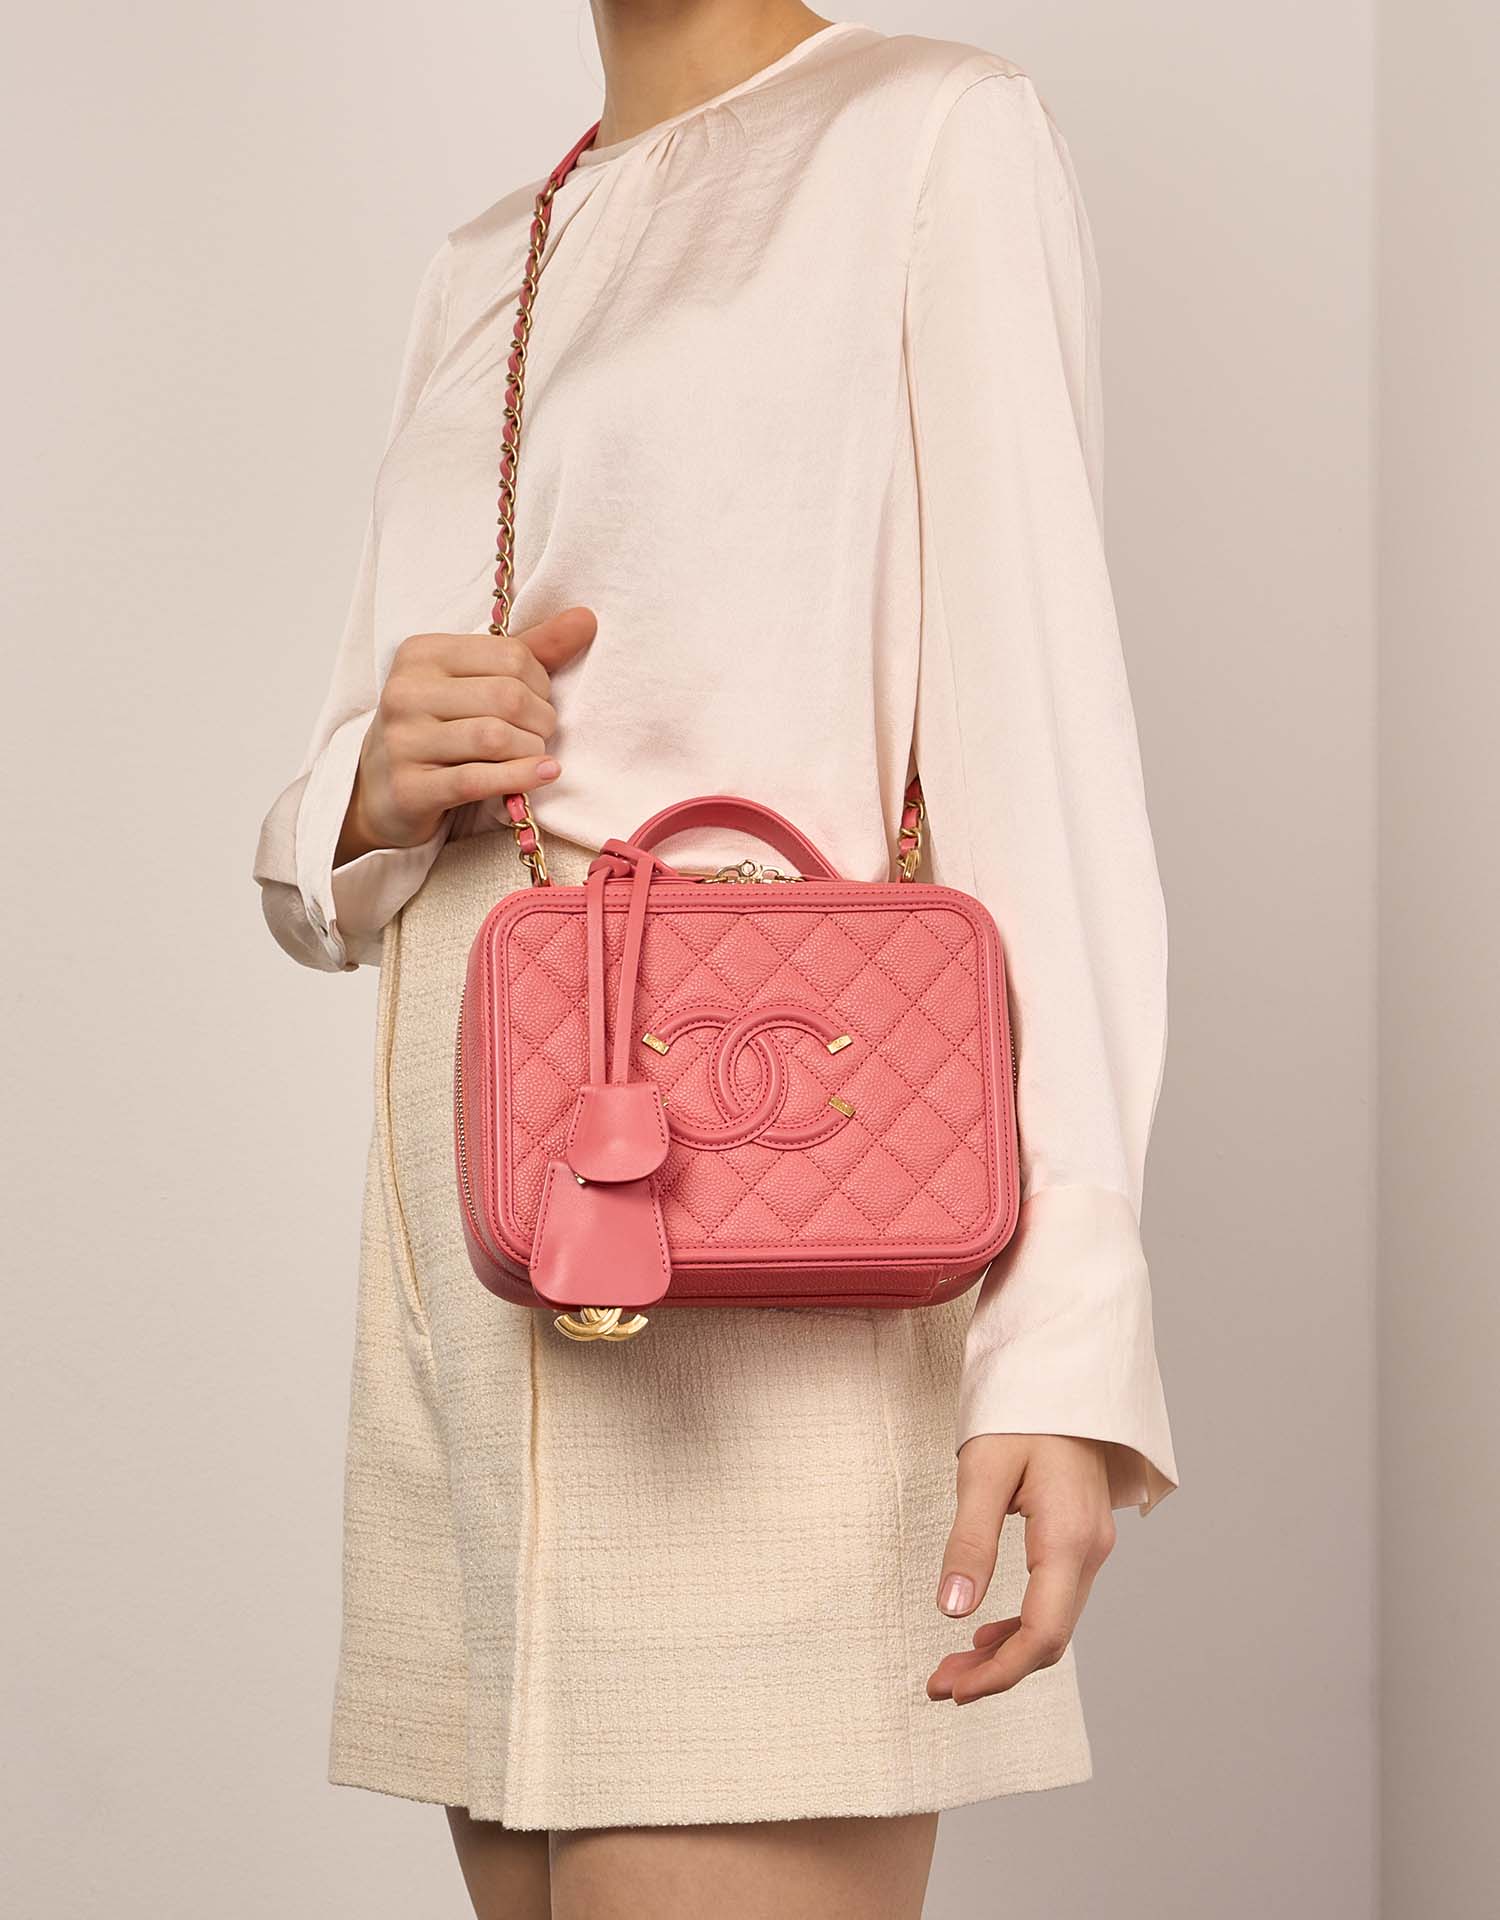 Chanel Vanity Medium Rosa Größen Getragen | Verkaufen Sie Ihre Designer-Tasche auf Saclab.com